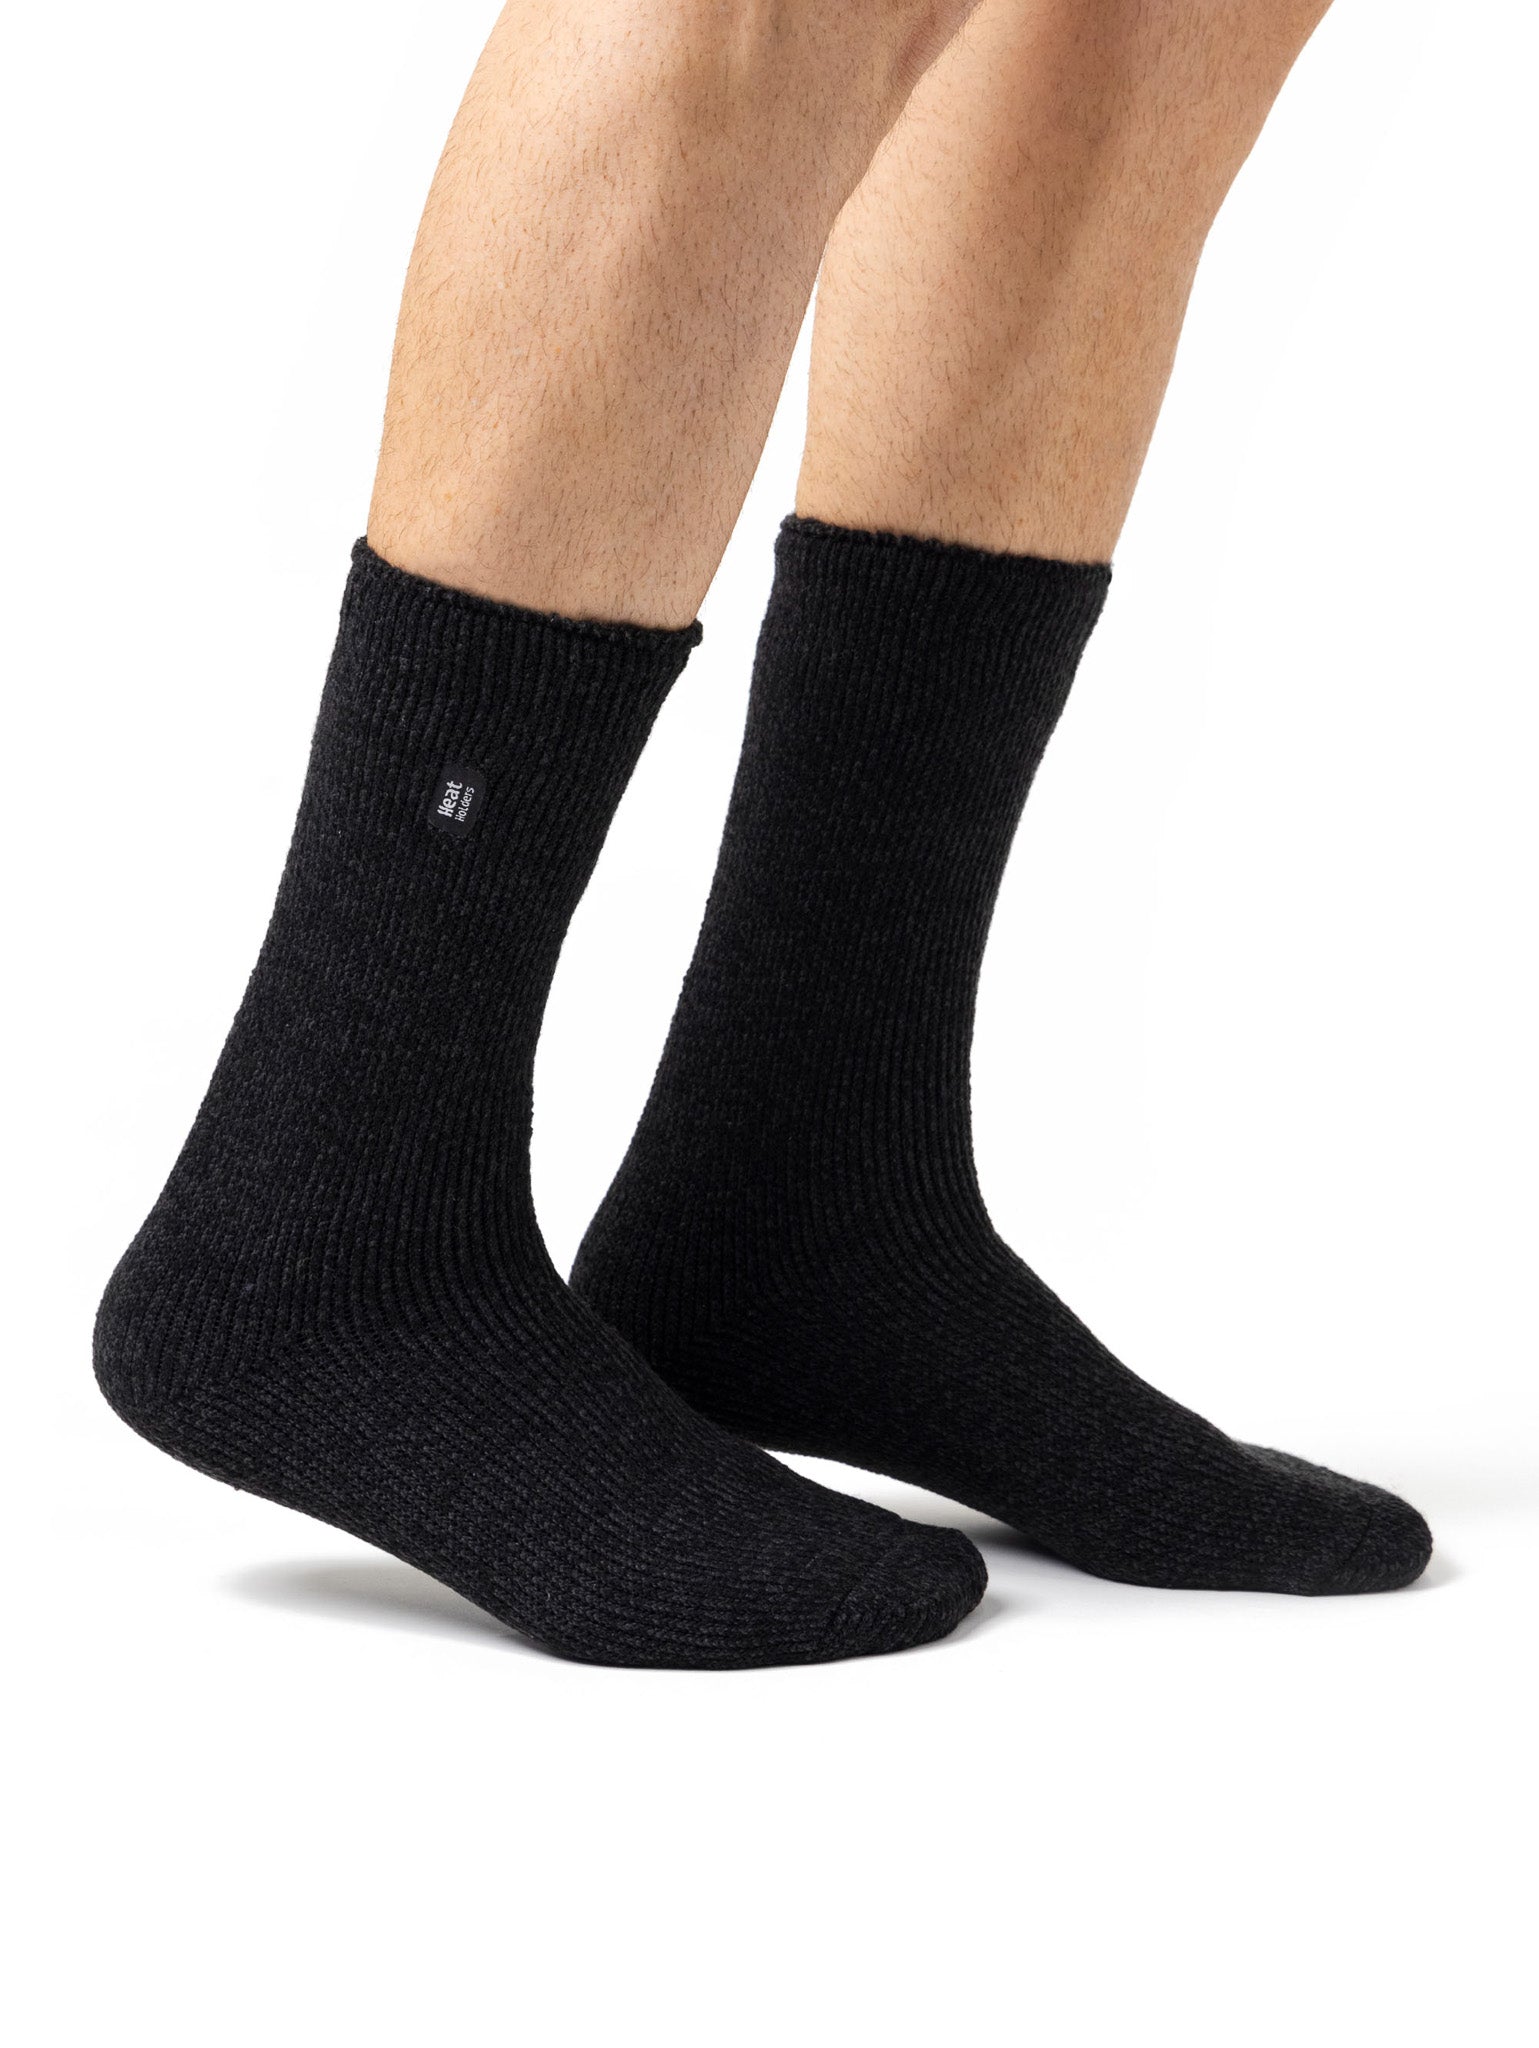 HEAT HOLDERS Original Ultimate Thermal Sock-Men's